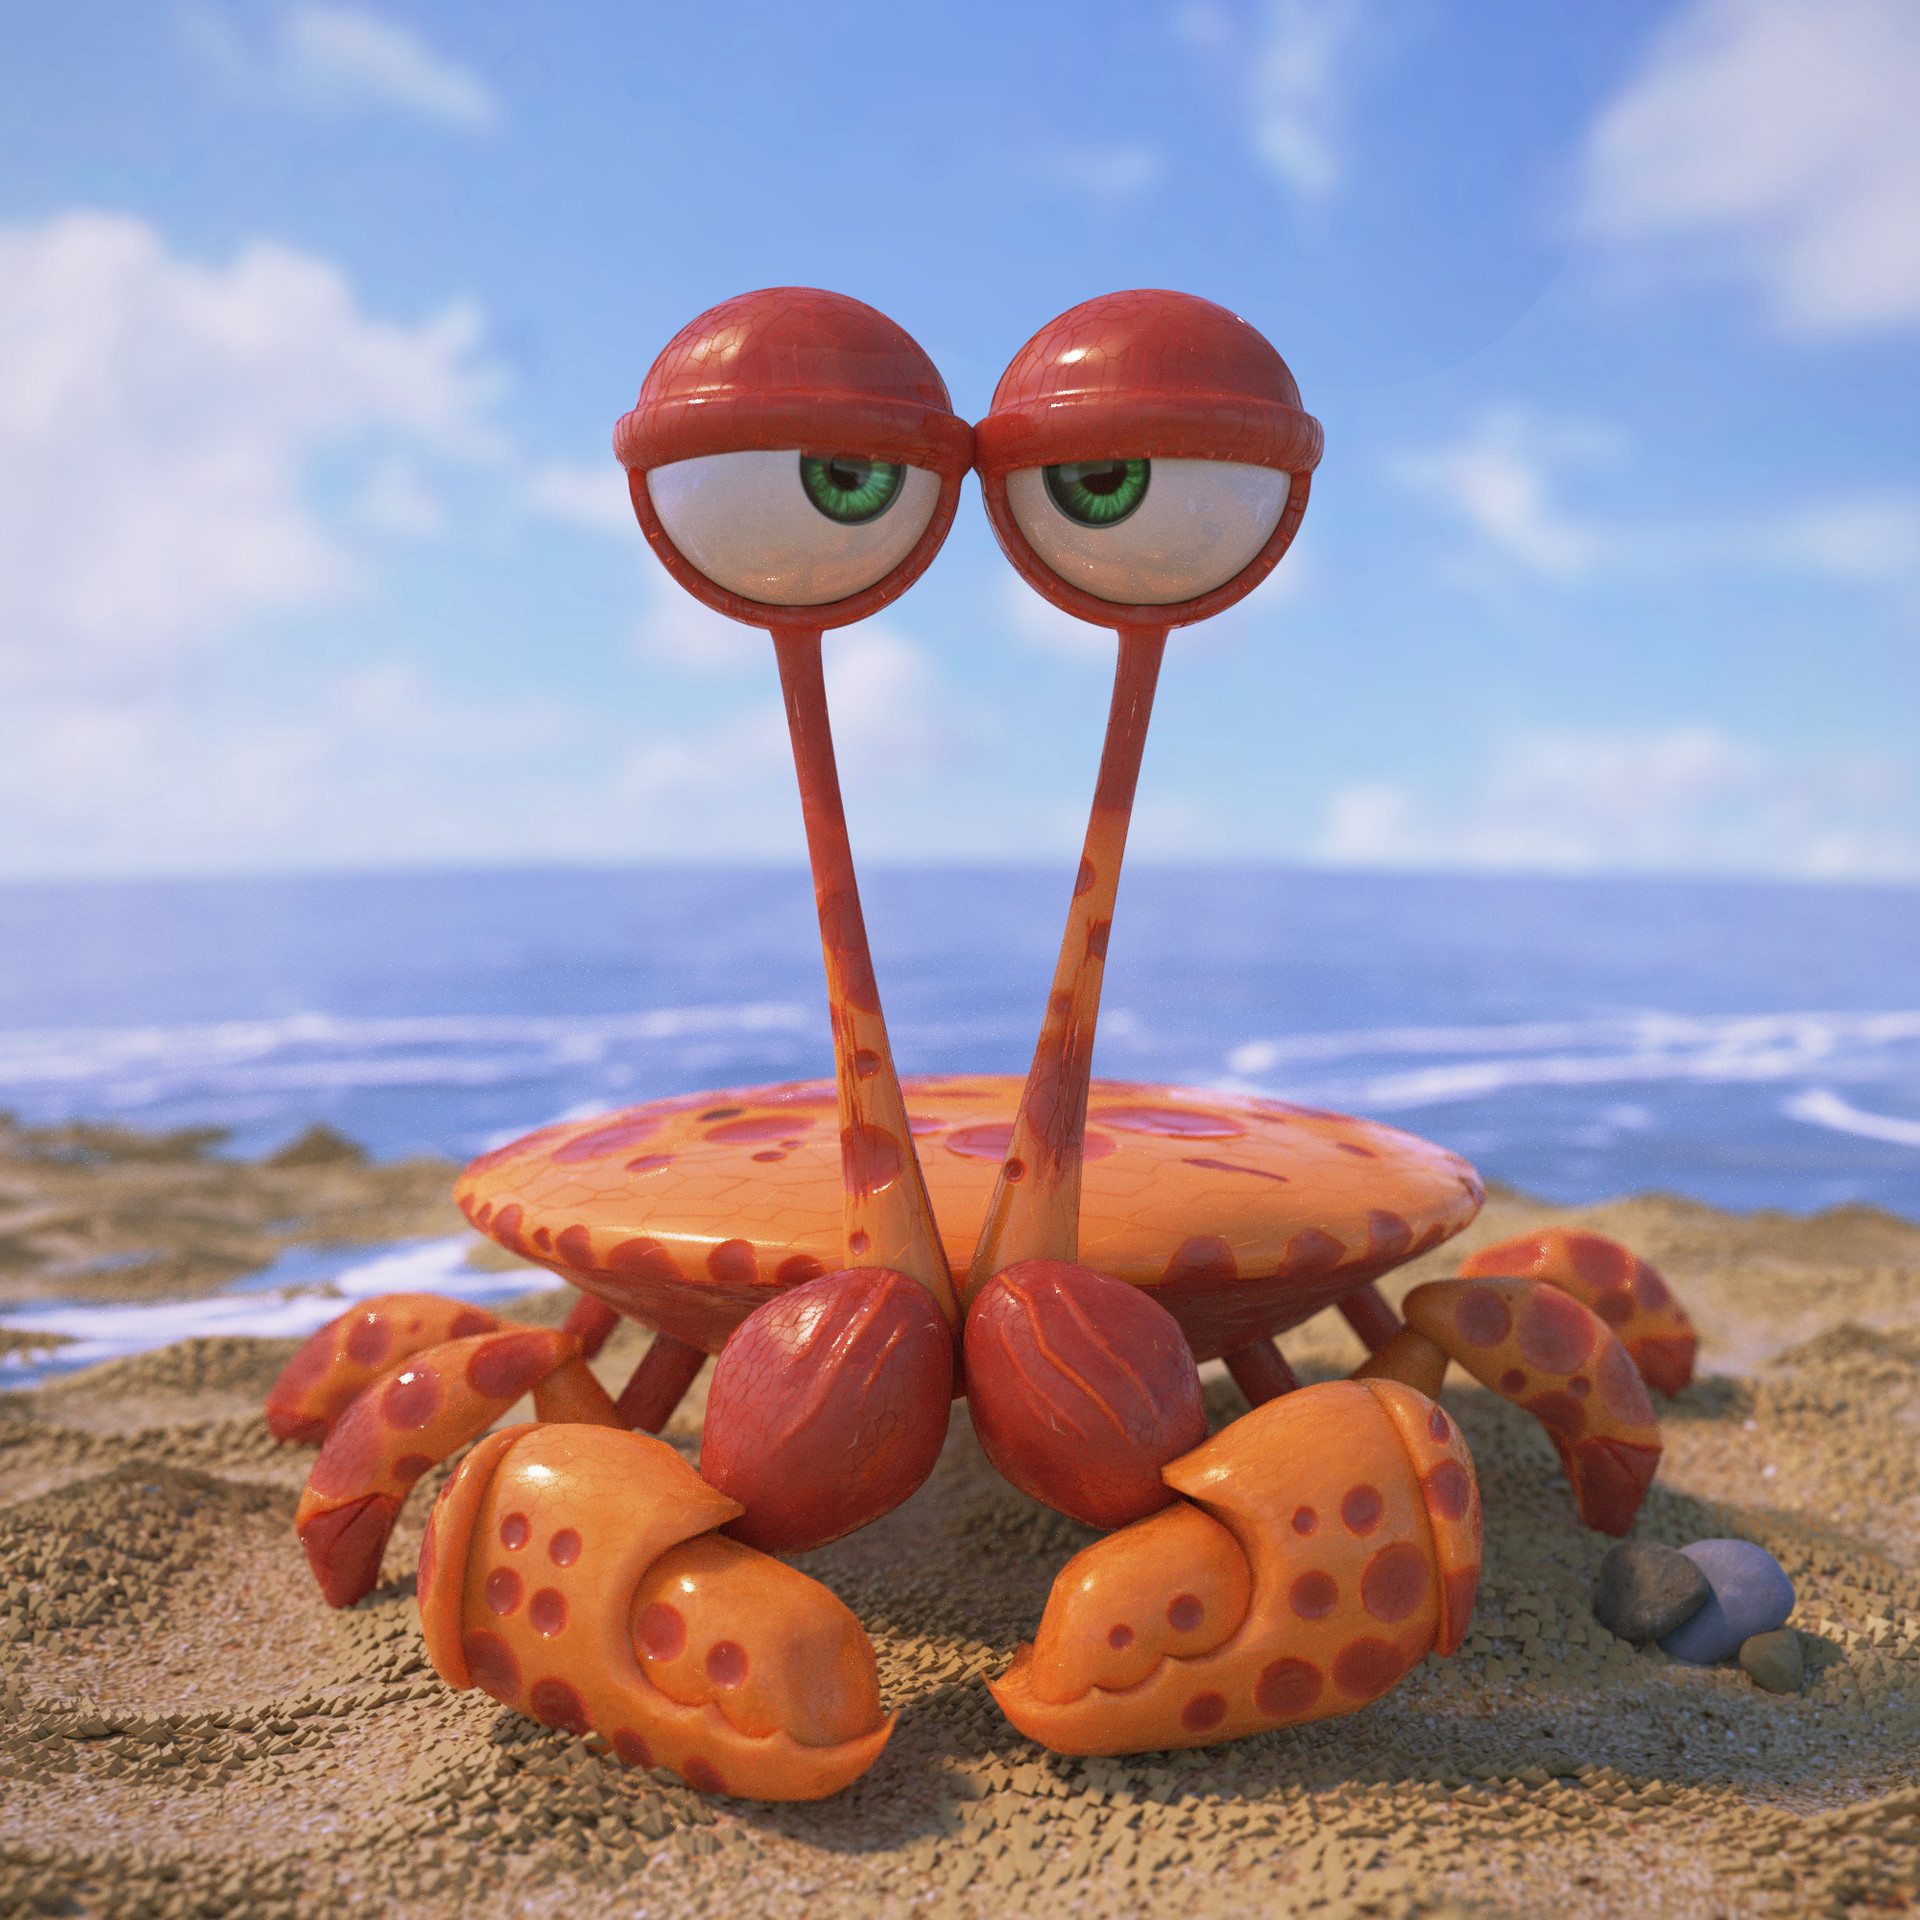 Mr Crab - Blender. 